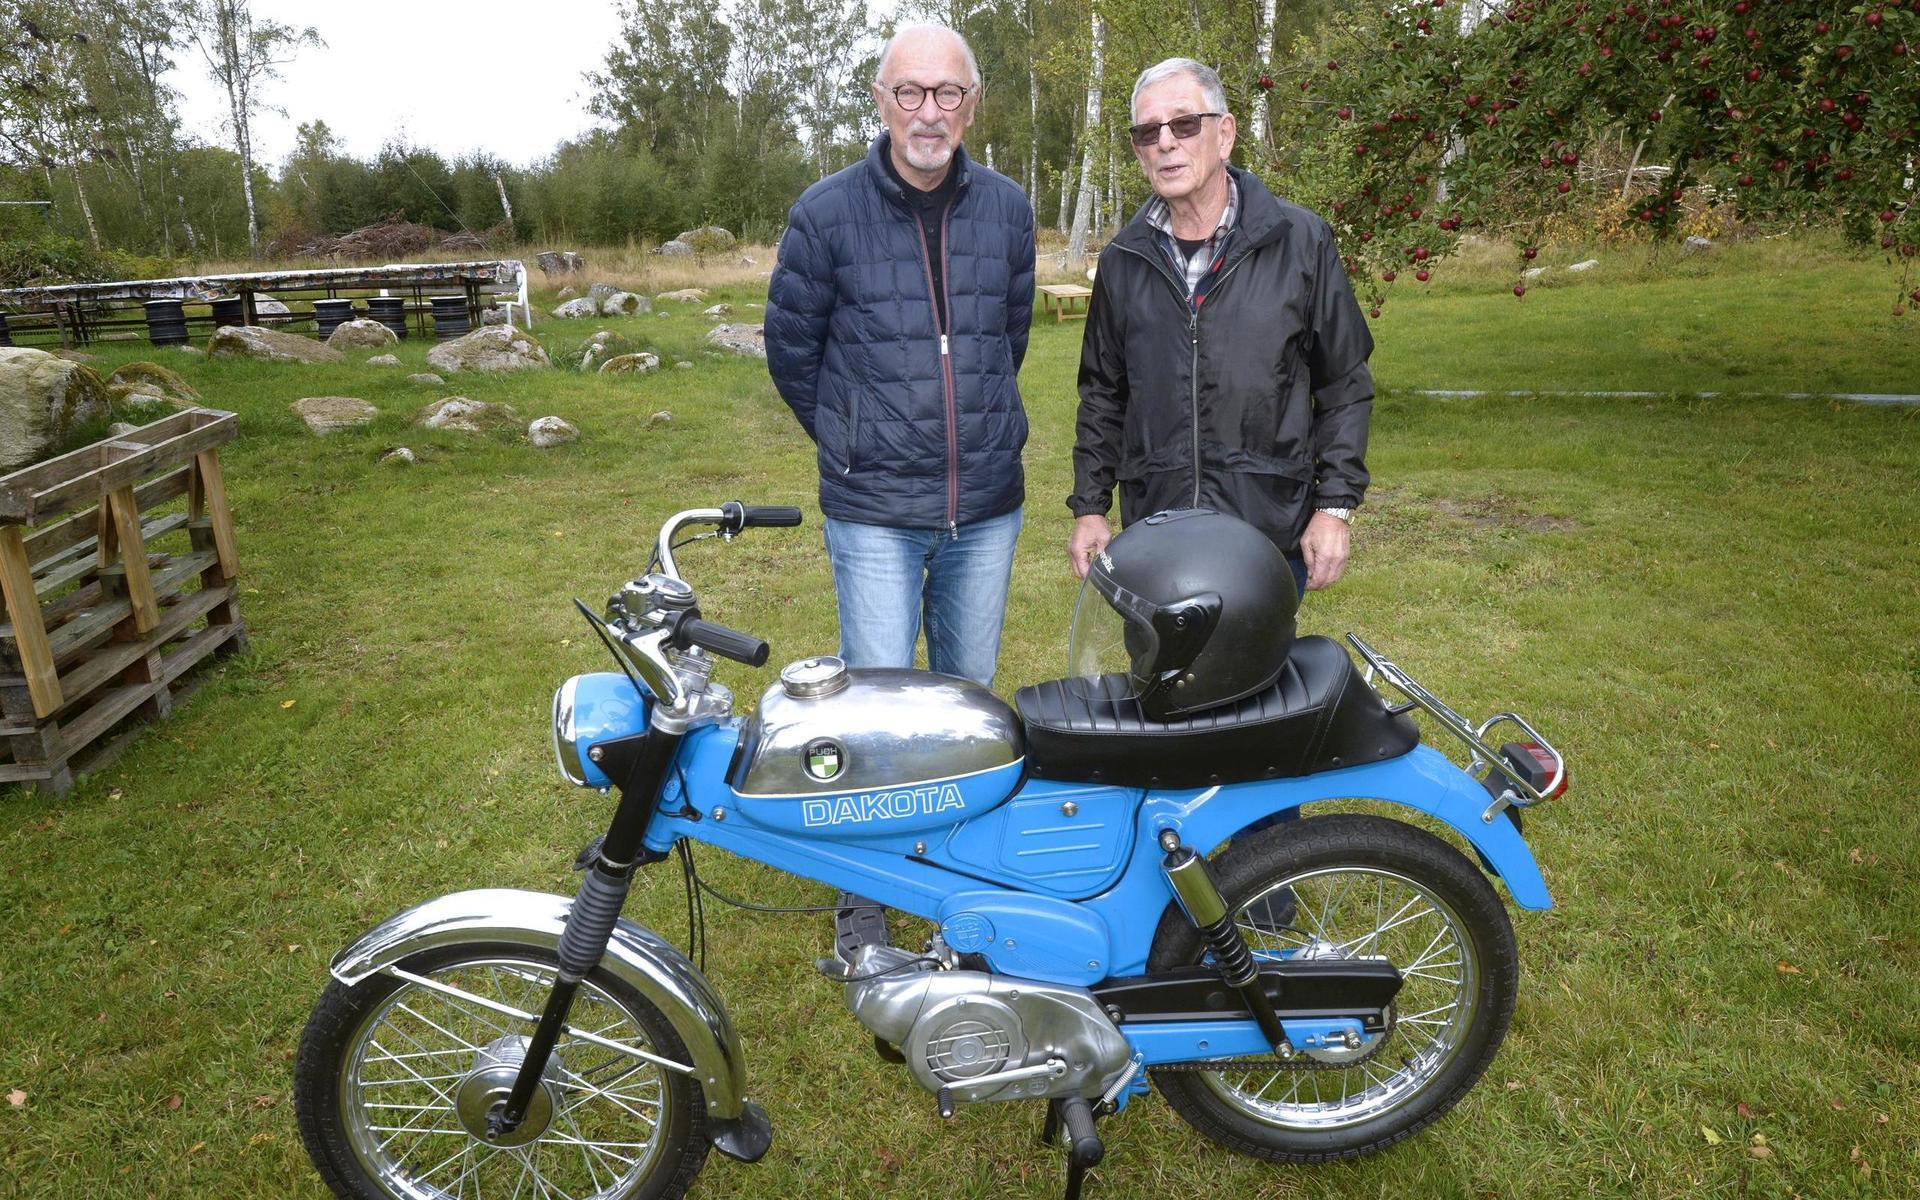 Belis cafe och Nostalgi. Mopedfantasterna Lennart Reimer och Hans Strömberg från Varberg beundrar en Puch Dakota från 1969. Lennar äger 11 mopeder och tre motorcyklar, medan Hans nöjer sig med 6 mopeder.